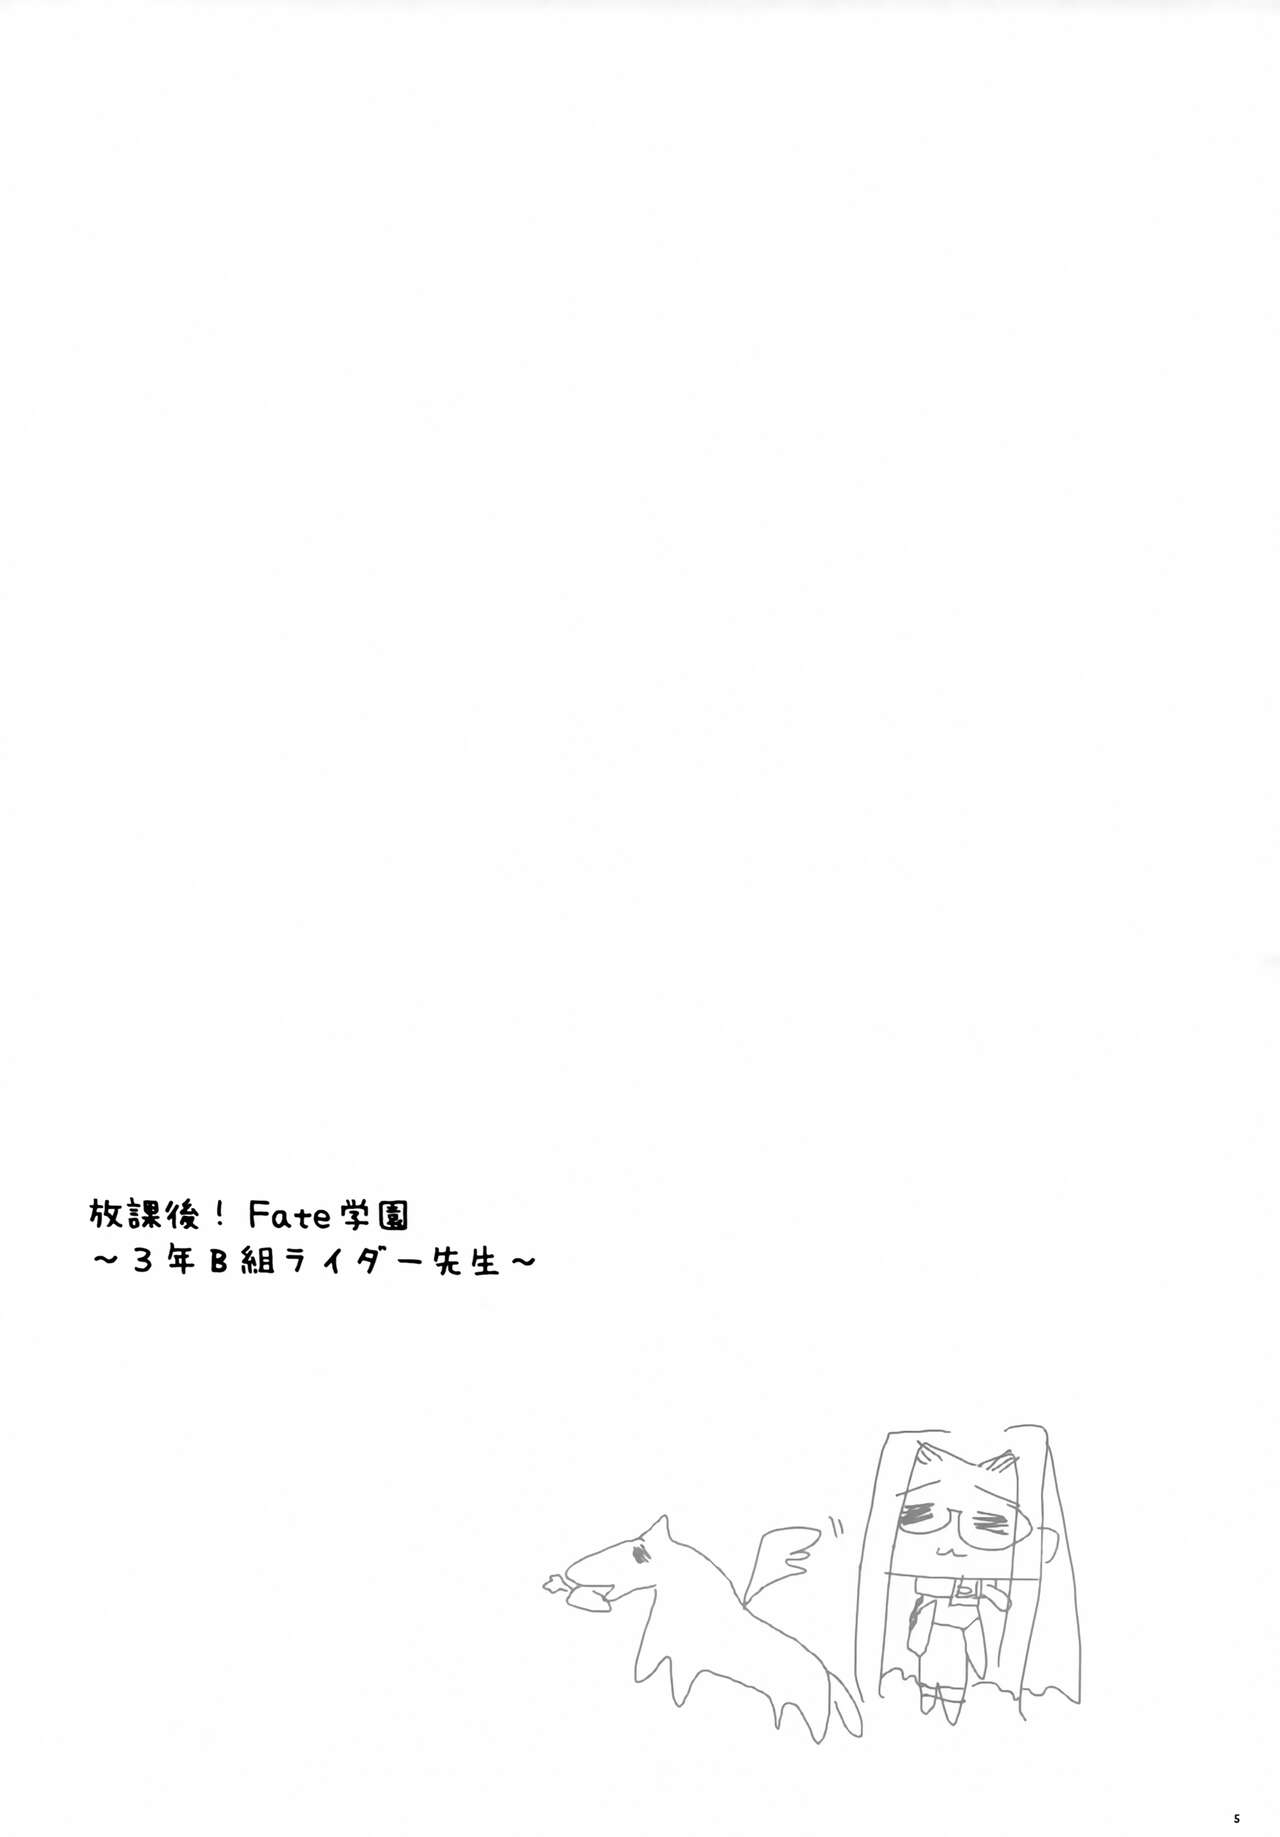 (Cレヴォ36) [aqua drop...★ (桃水ぴろみ)] 放課後!Fate学園～3年B組ライダー先生～ (Fate/stay night)